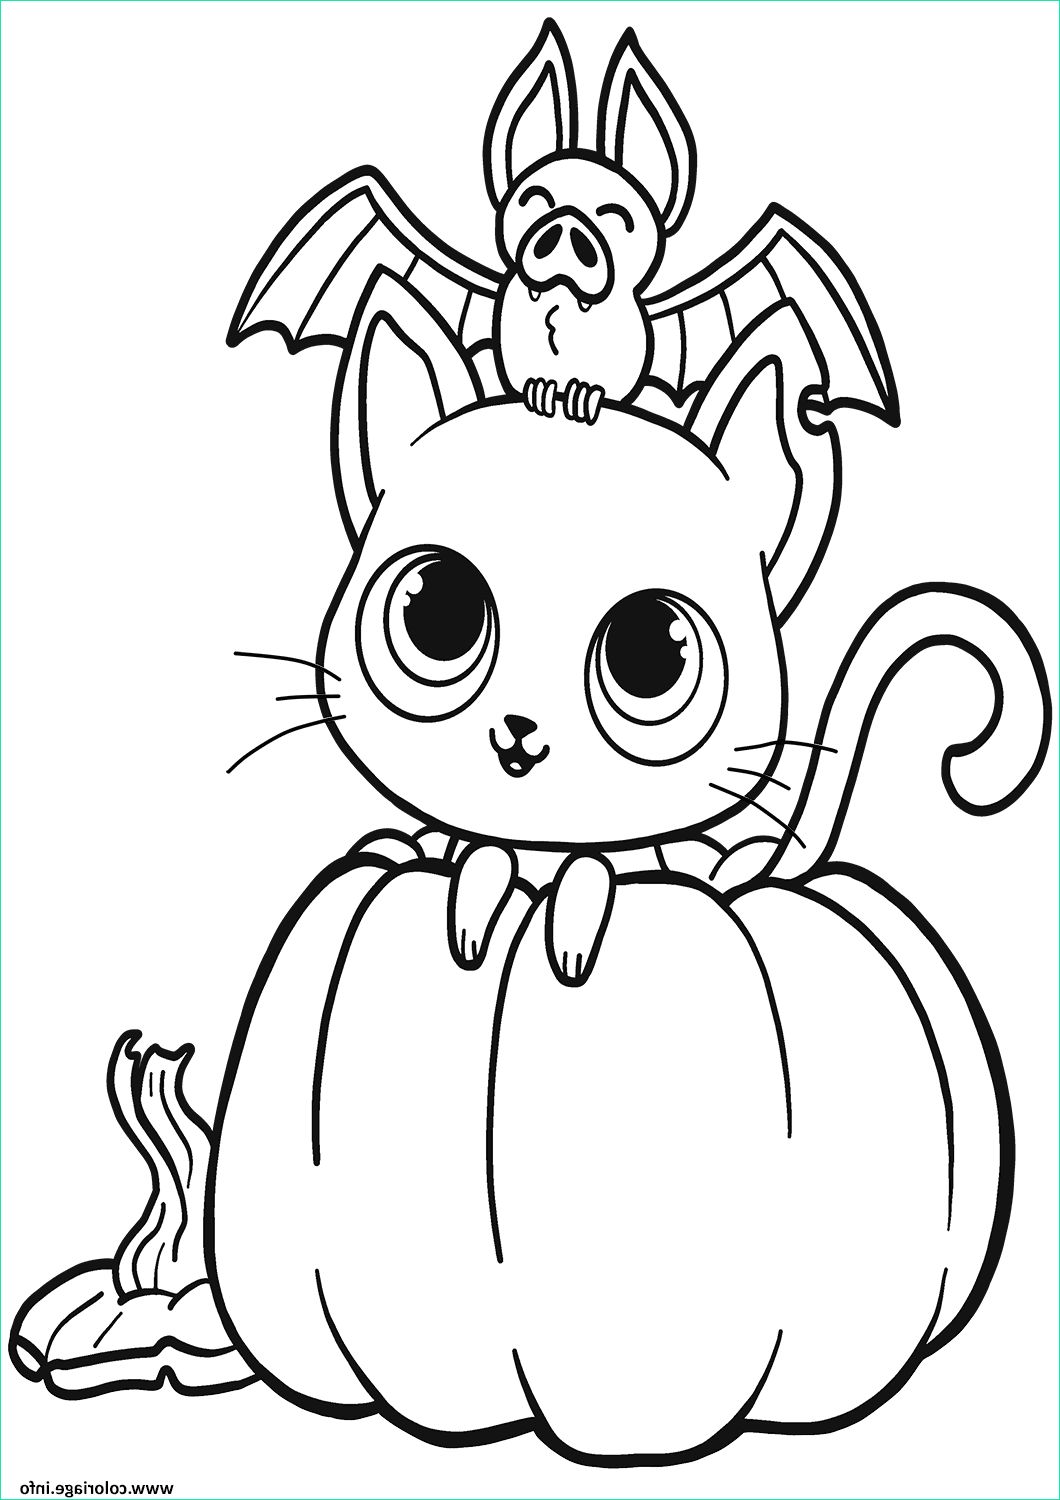 Coloriage De Halloween Cool Stock Coloriage Chauve souris Chat Citrouille Halloween Dessin